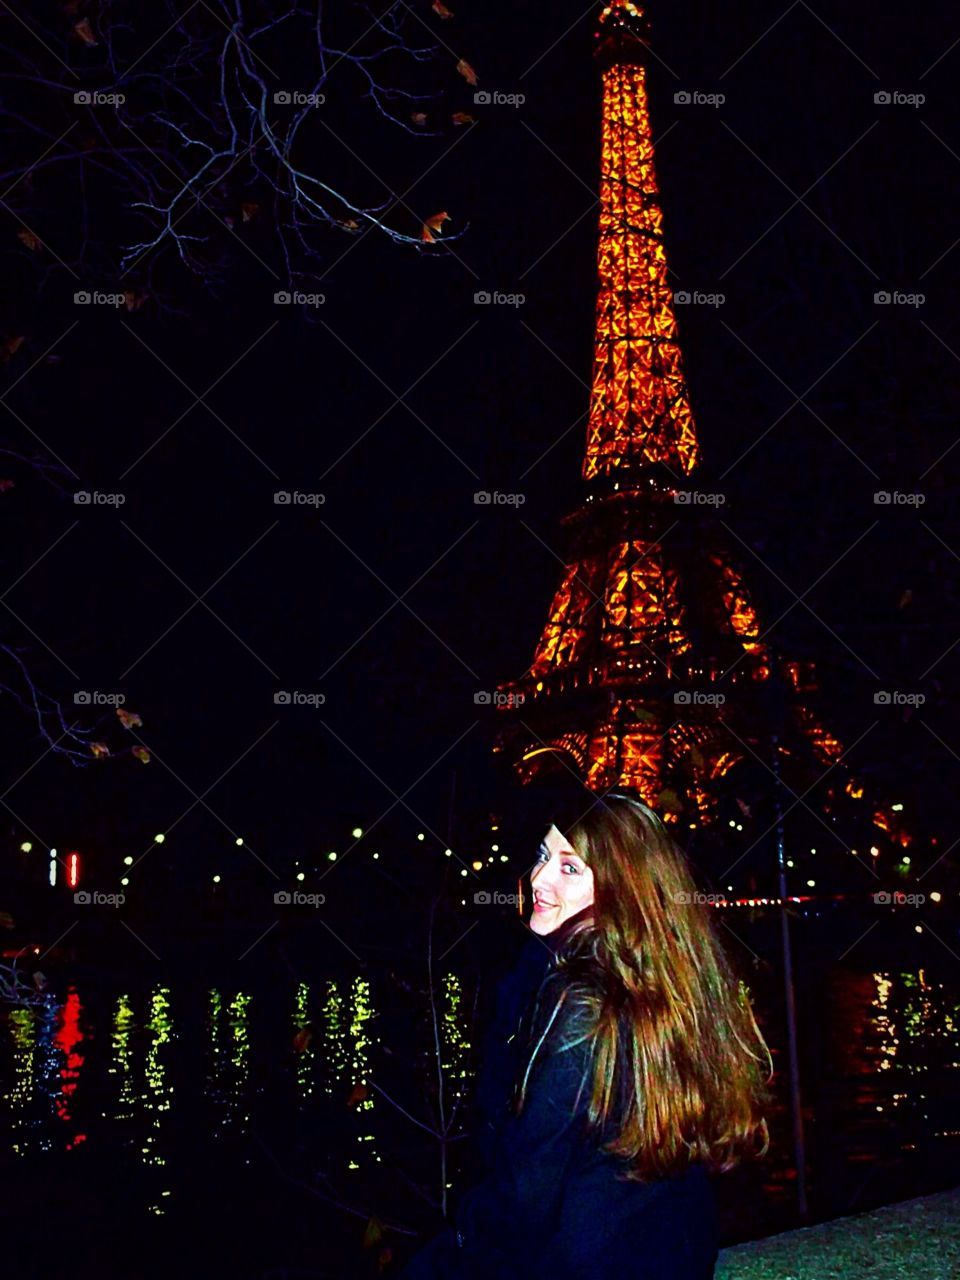 Midnight in Paris
